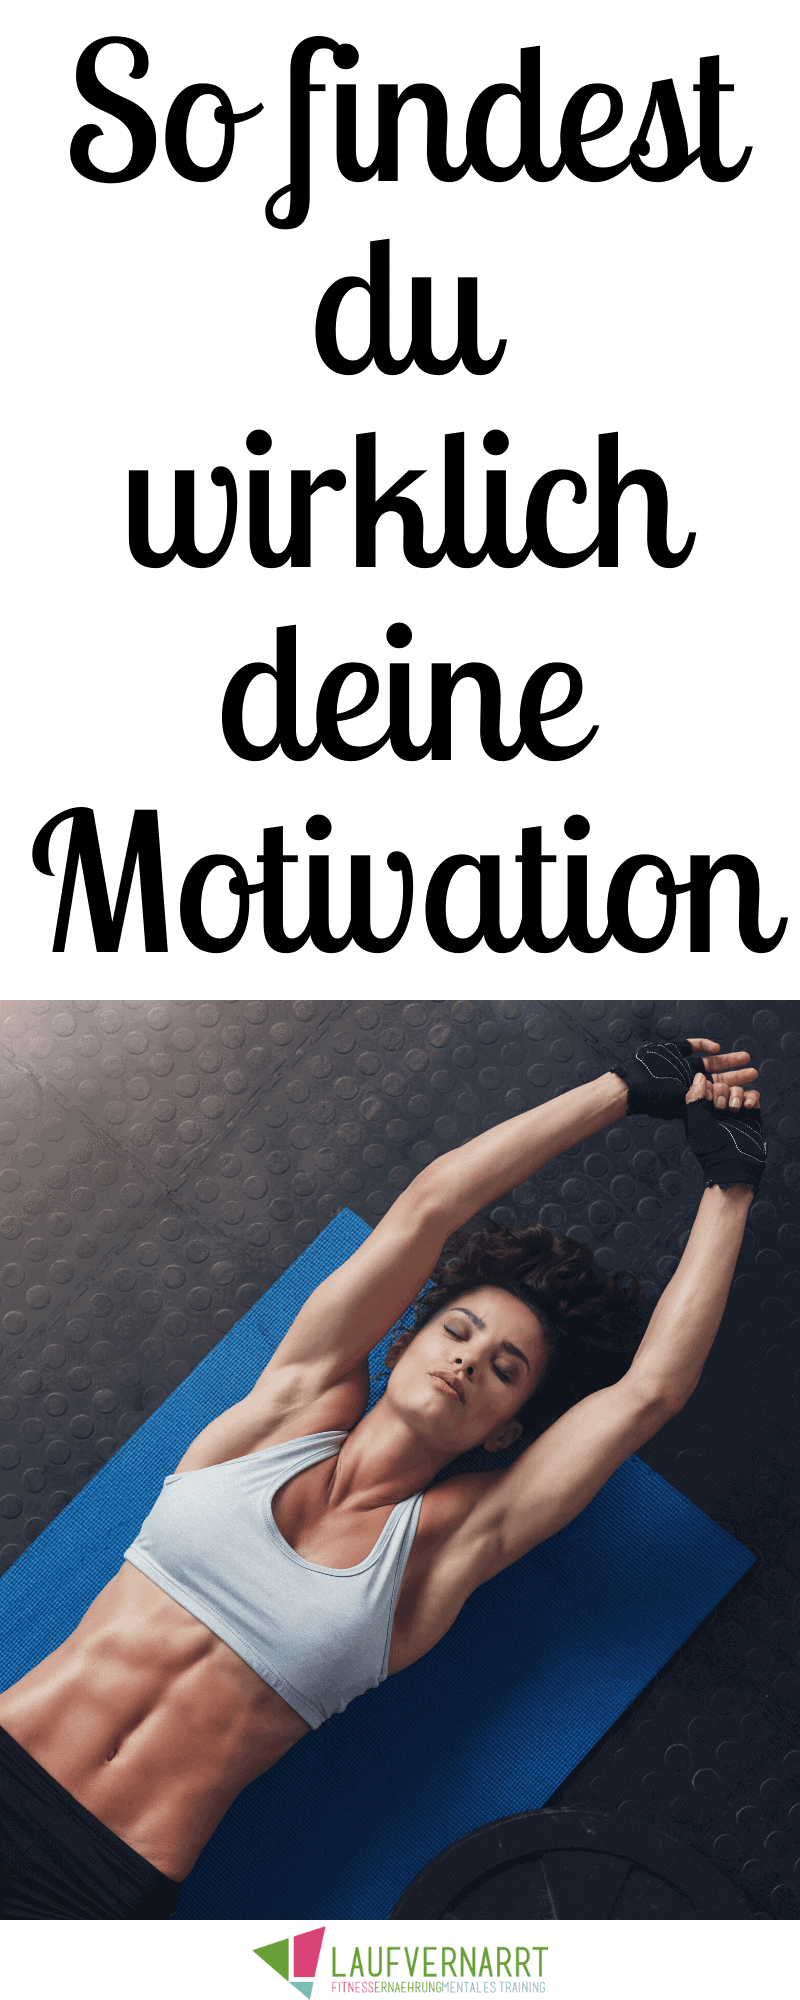 Willst du endlich deine Motivation finden und dauerhaft motiviert bleiben, dich gesund zu ernähren und zu trainieren? Hier findest du die besten Tipps.  #motivation #gesund #ernährung #training #fitness